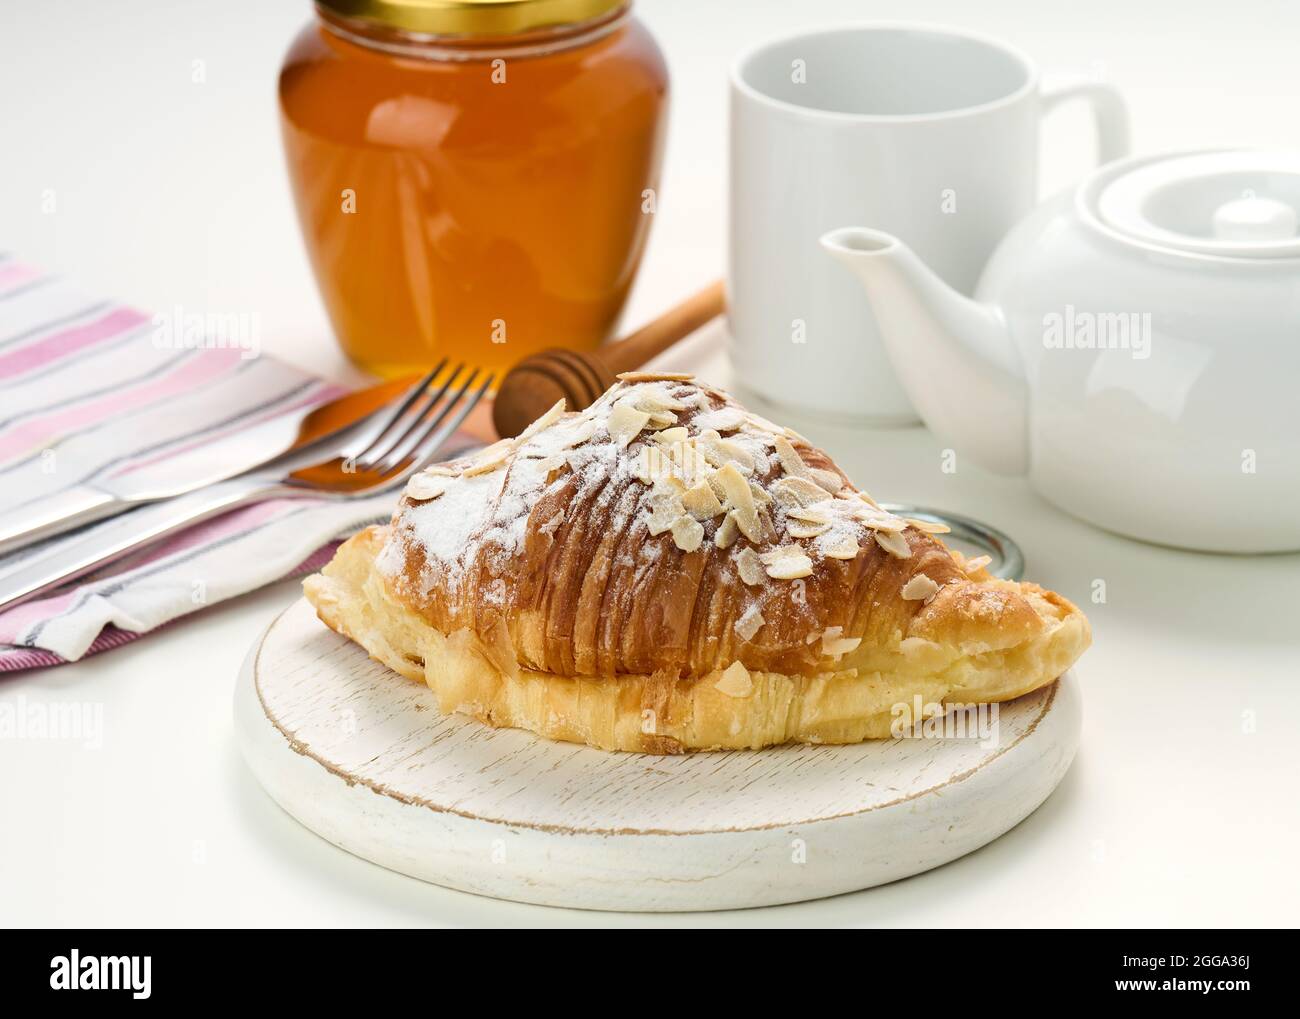 Un croissant croustillant cuit est arrosé de sucre en poudre et de flocons d'amandes sur un panneau de bois, une infusion de céramique blanche et une tasse sur une table blanche. Petit déjeuner Banque D'Images